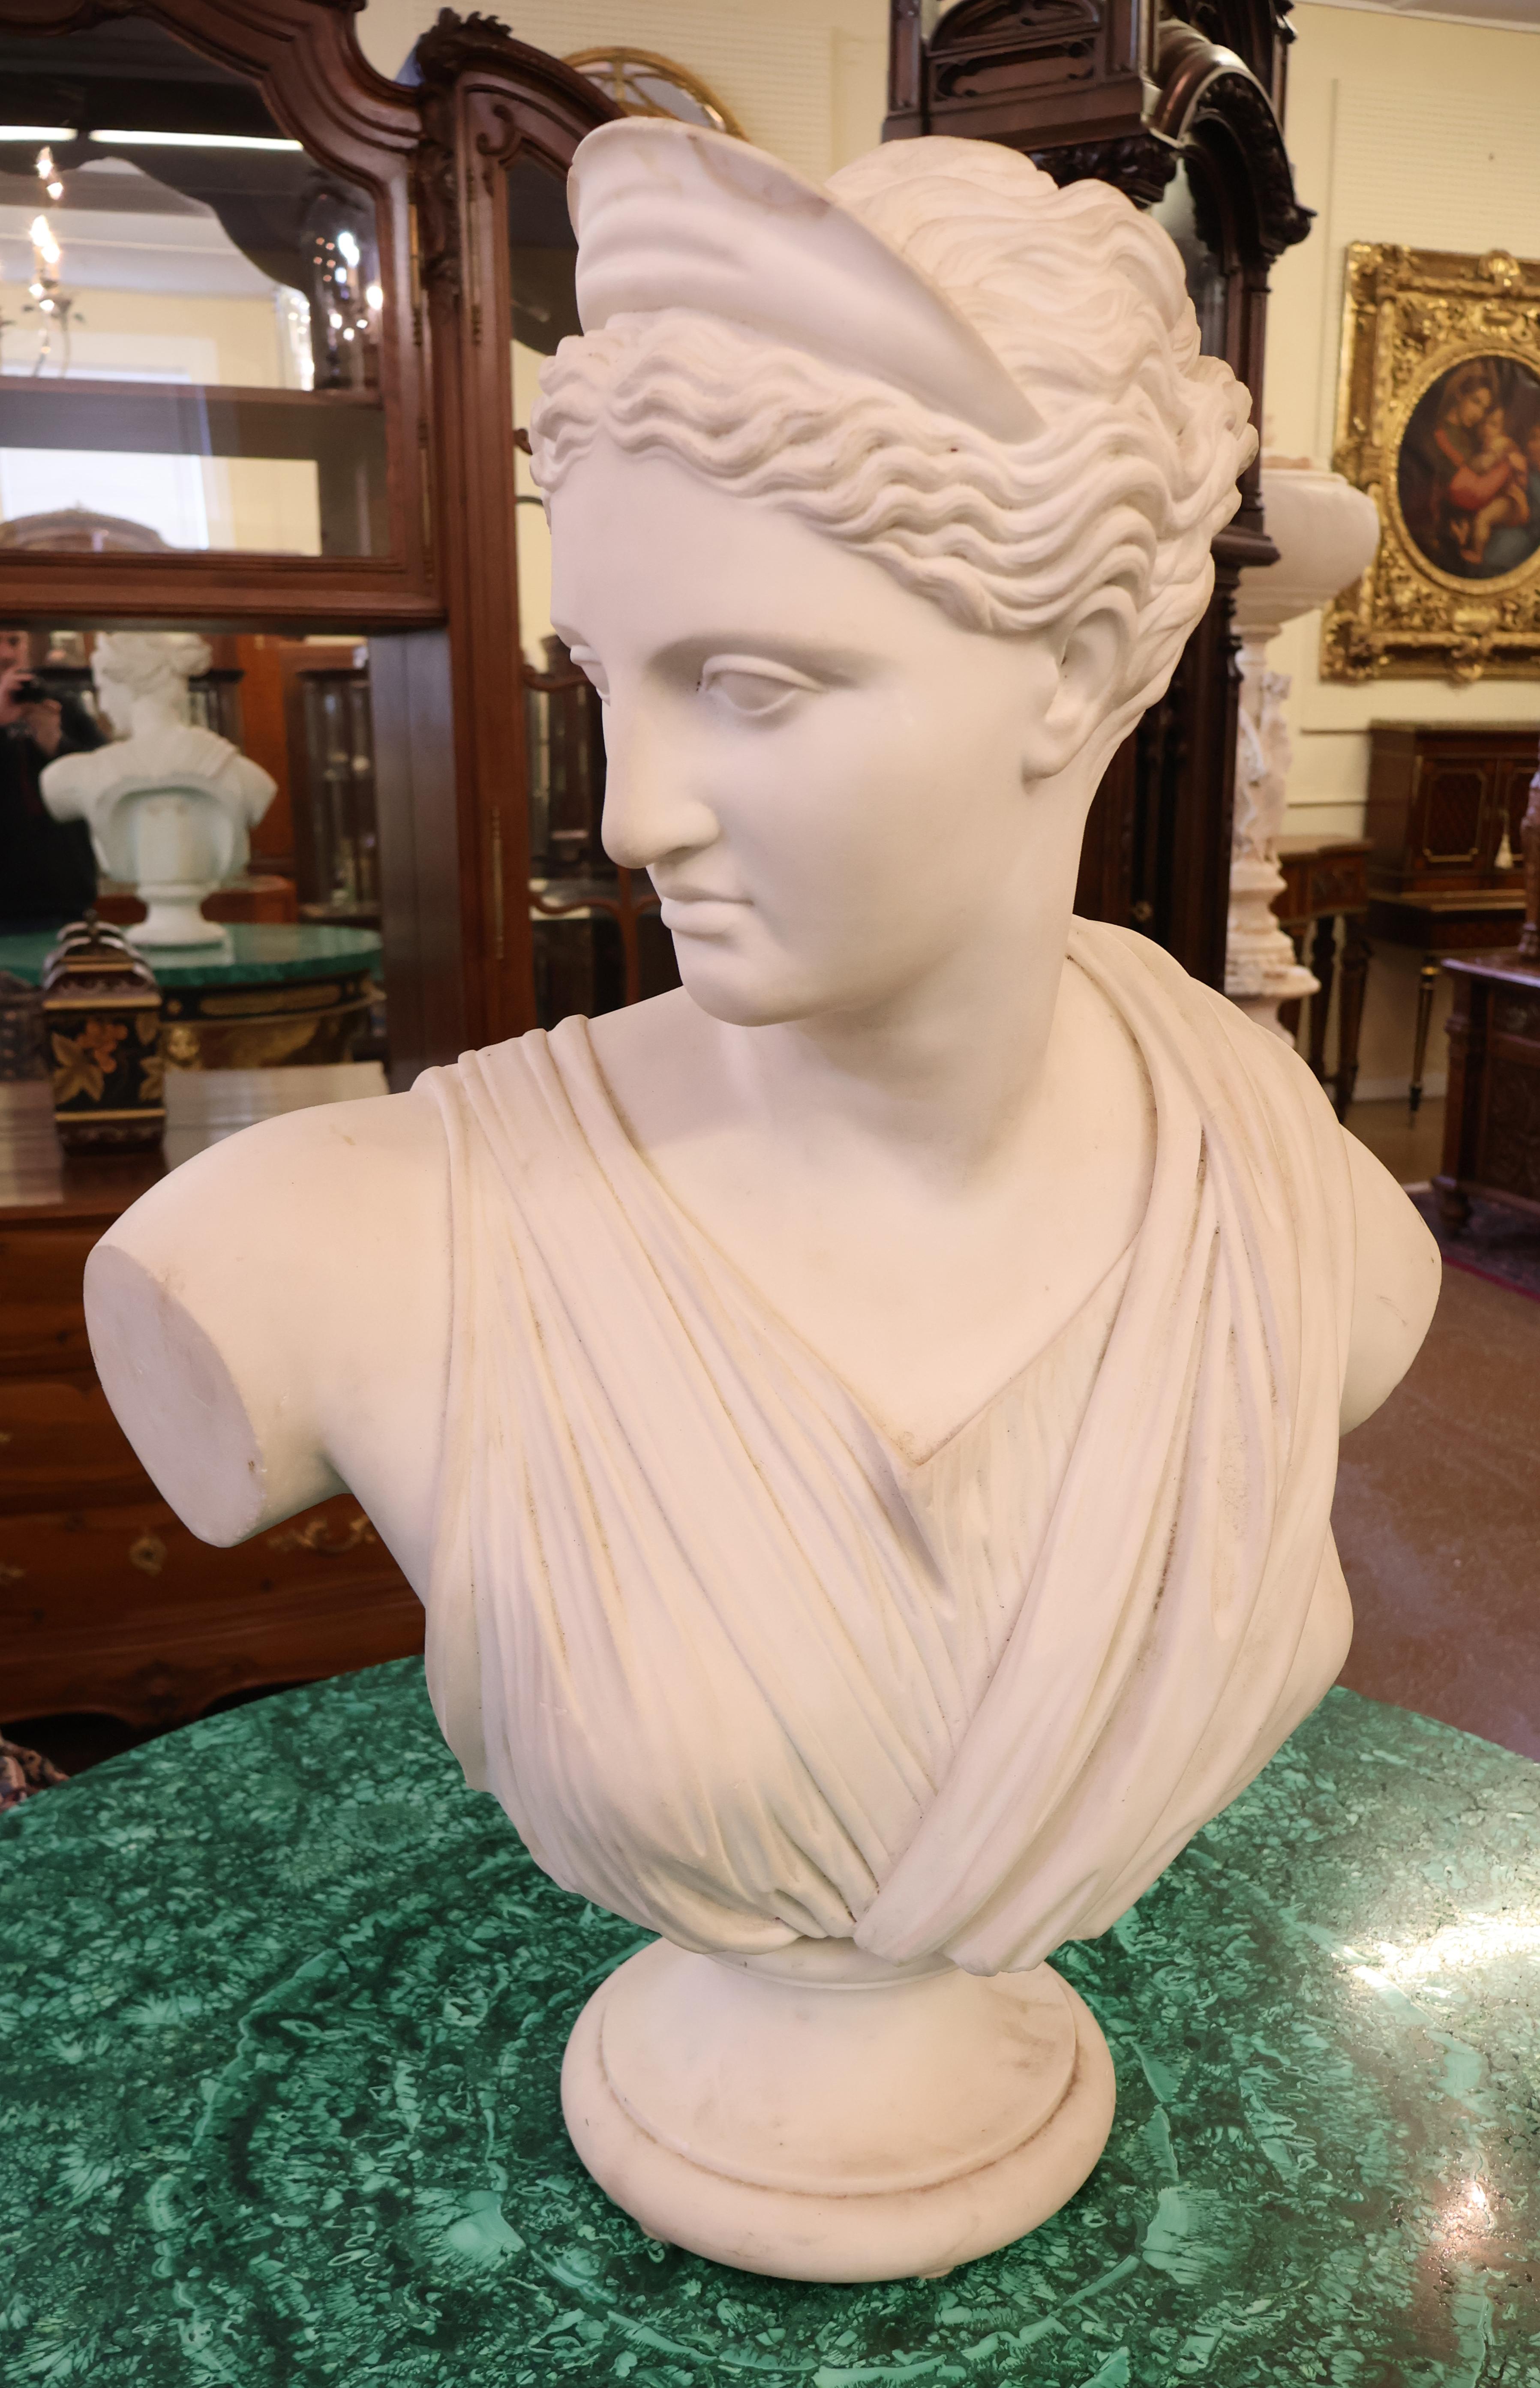 Pietro Bazzanti, italienische Carrara-Marmorbüste einer römischen Frau aus dem 19. Jahrhundert

Abmessungen: 31